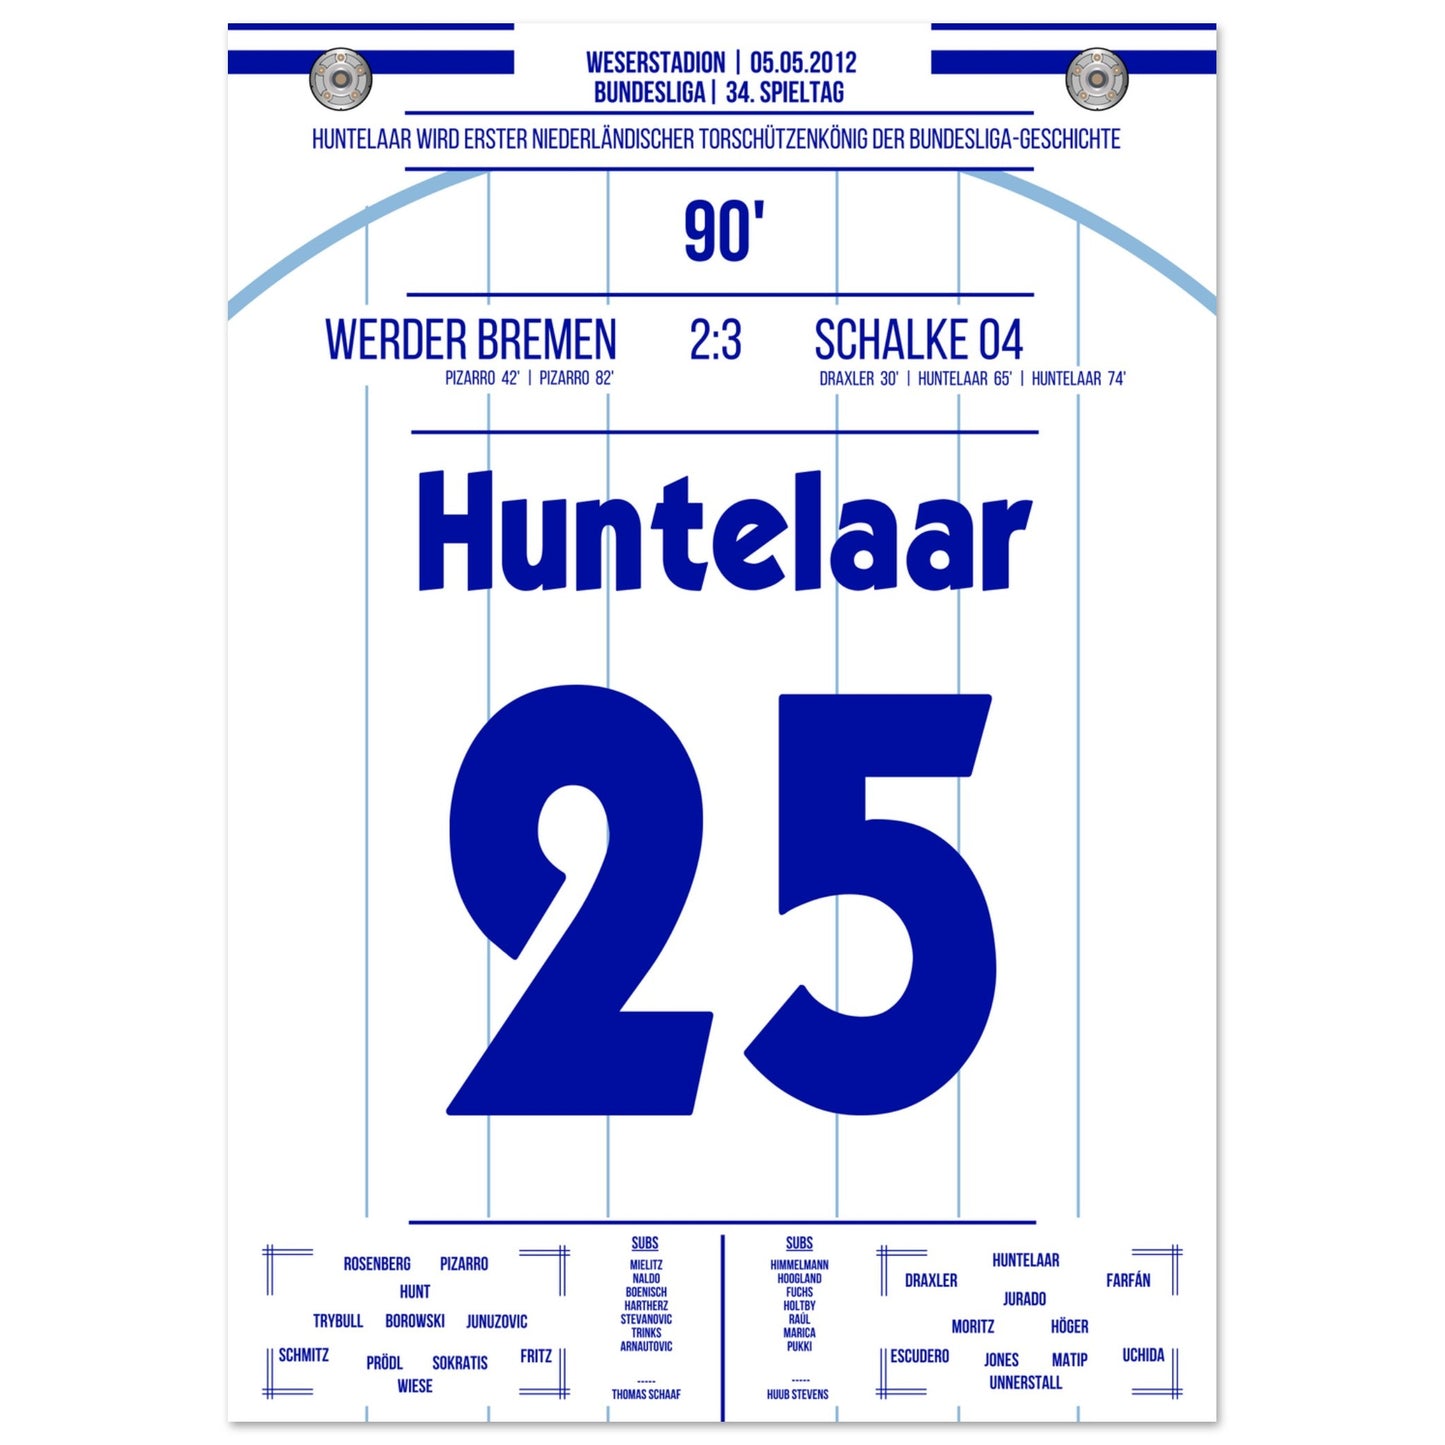 Huntelaar wird erster niederländischer Torschützenkönig der Bundesliga